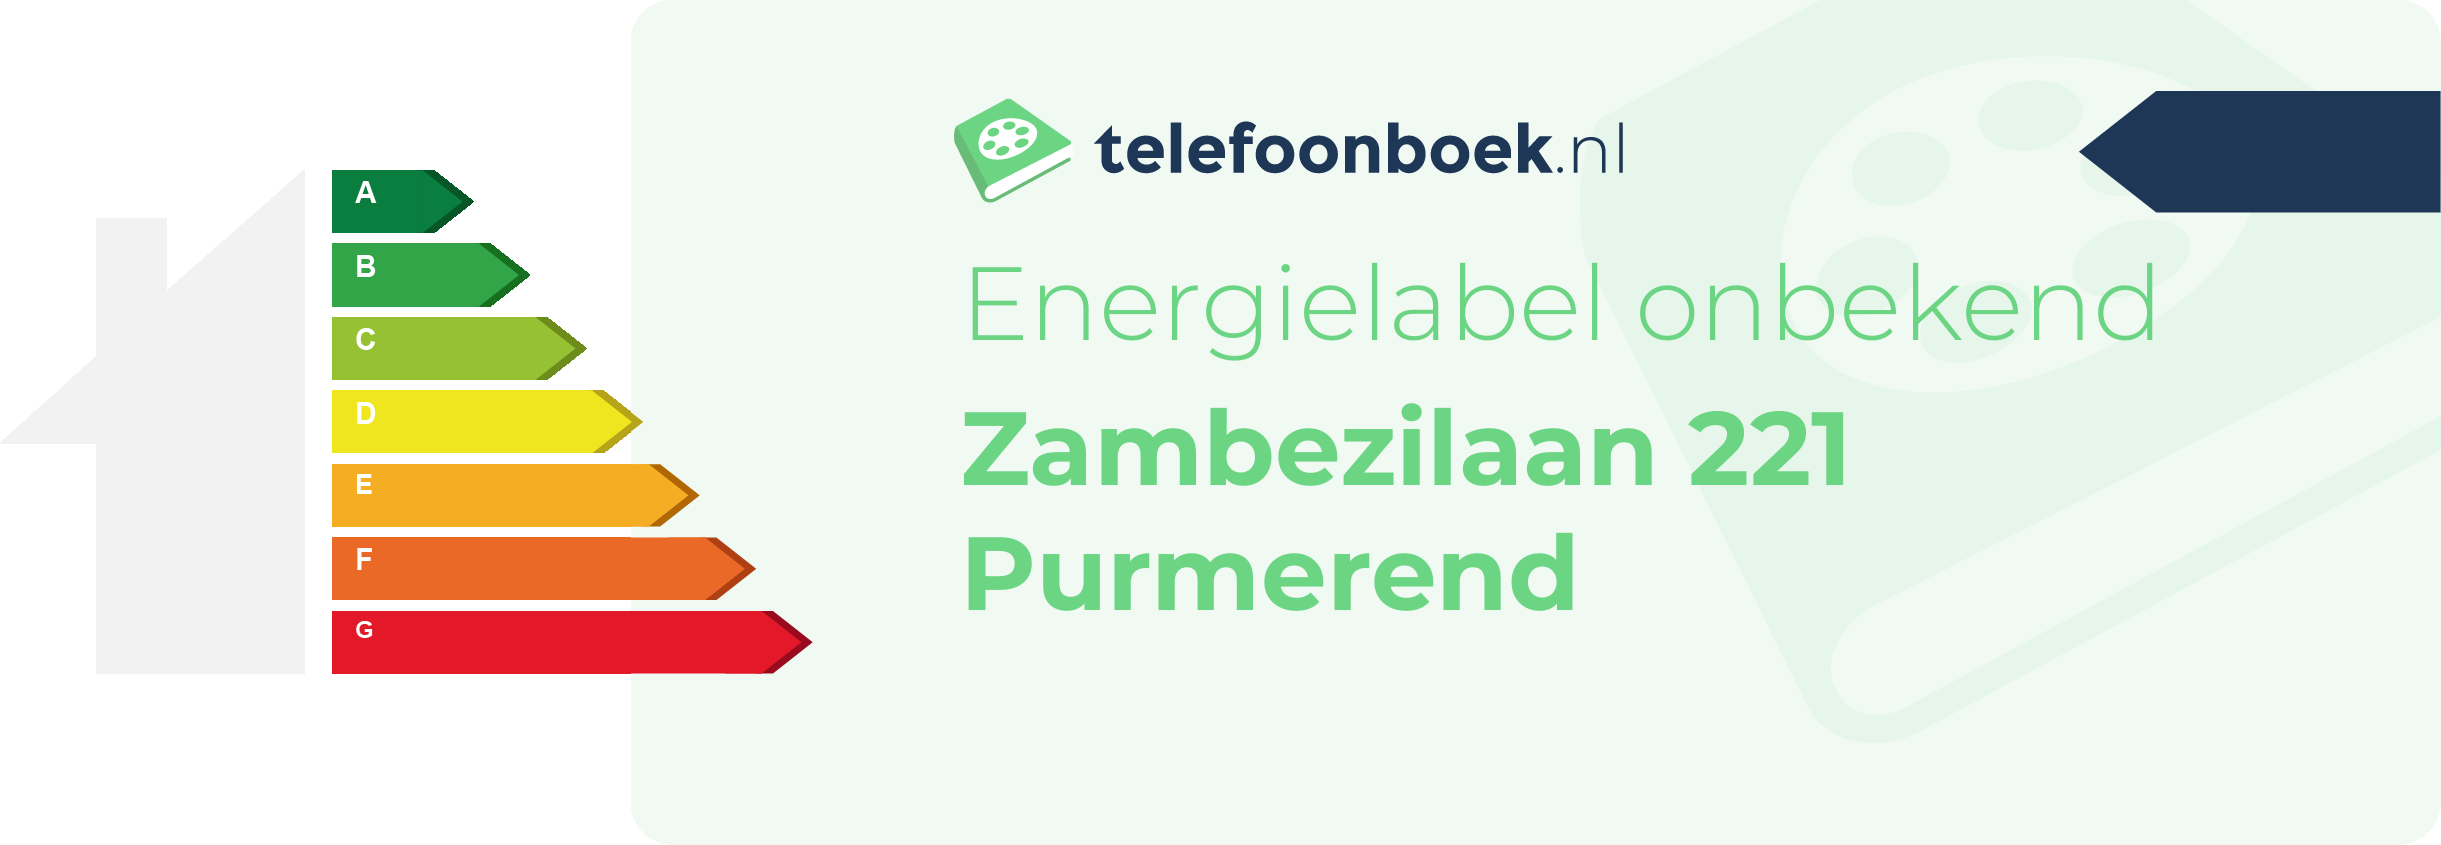 Energielabel Zambezilaan 221 Purmerend